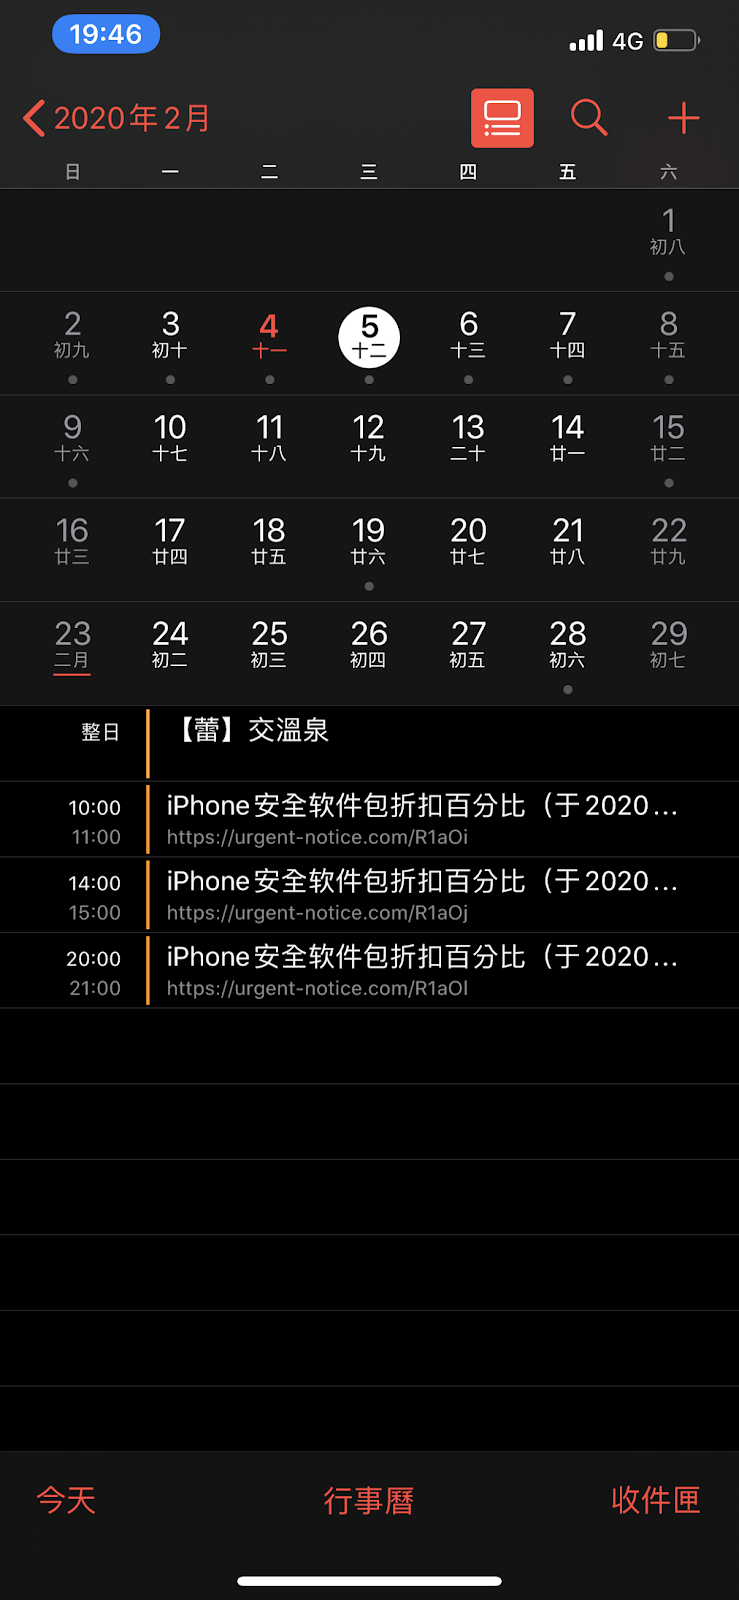 Iphone 行事曆被廣告綁架不用怕 五秒教你取消訂閱行事曆 手機上就能設定無需透過電腦 小食日記